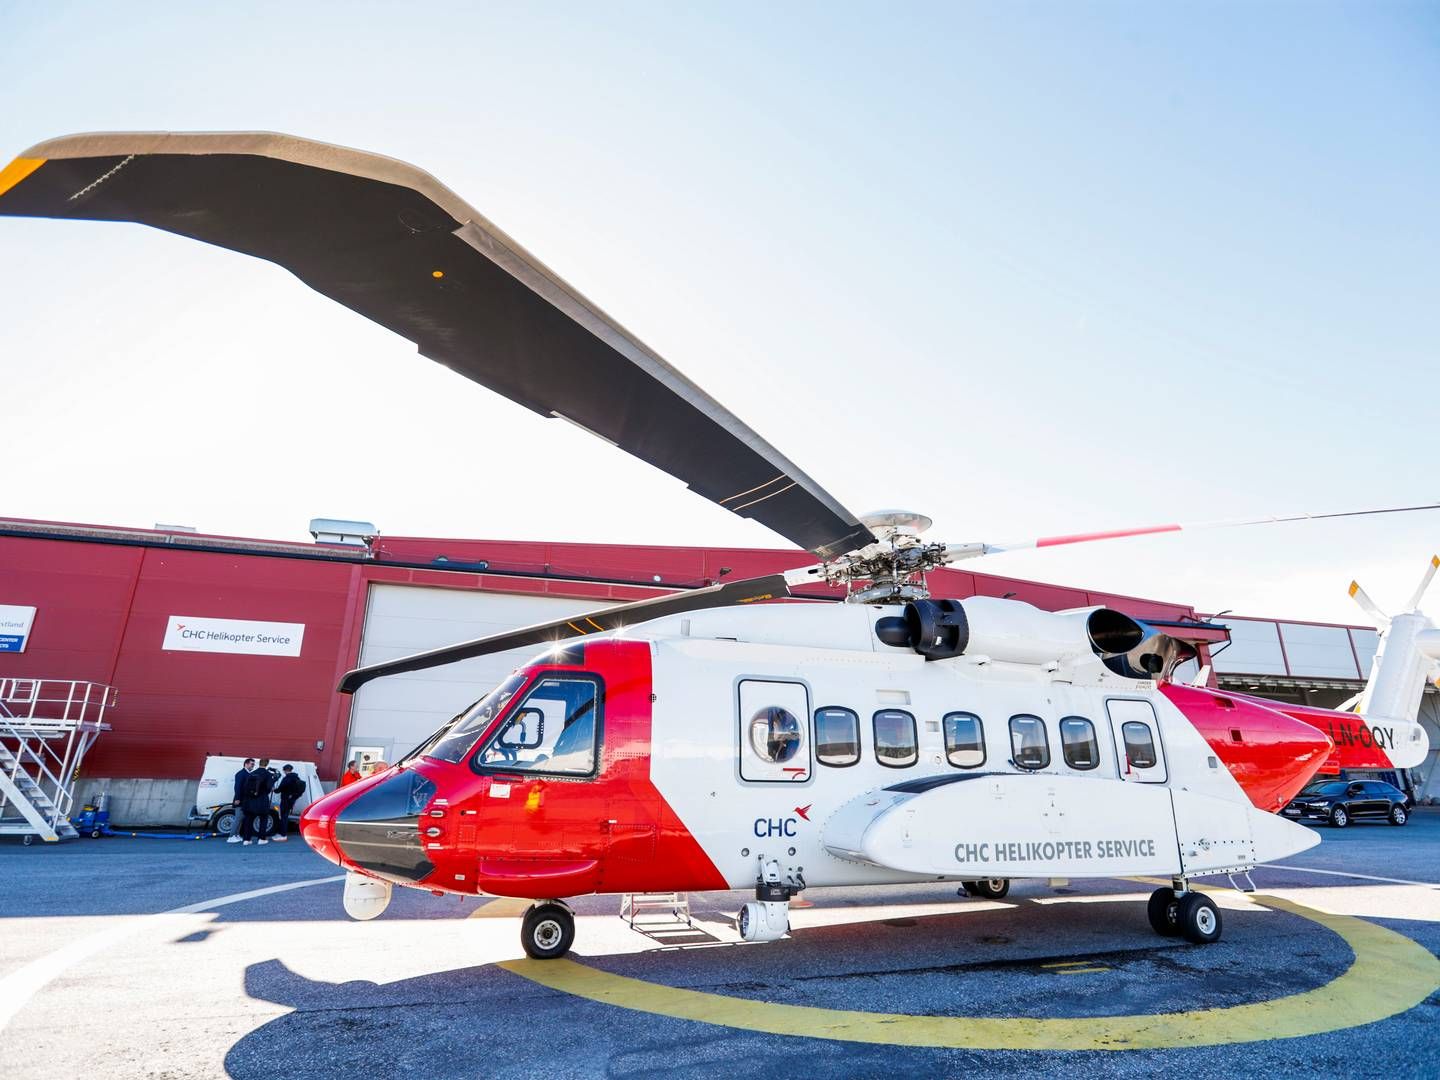 ALVORLIGE HENDELSER: Sikorsky S-92 har hatt tre alvorlige hendelser i Norge siden 2020. | Foto: Rune Stoltz Bertinussen / NTB